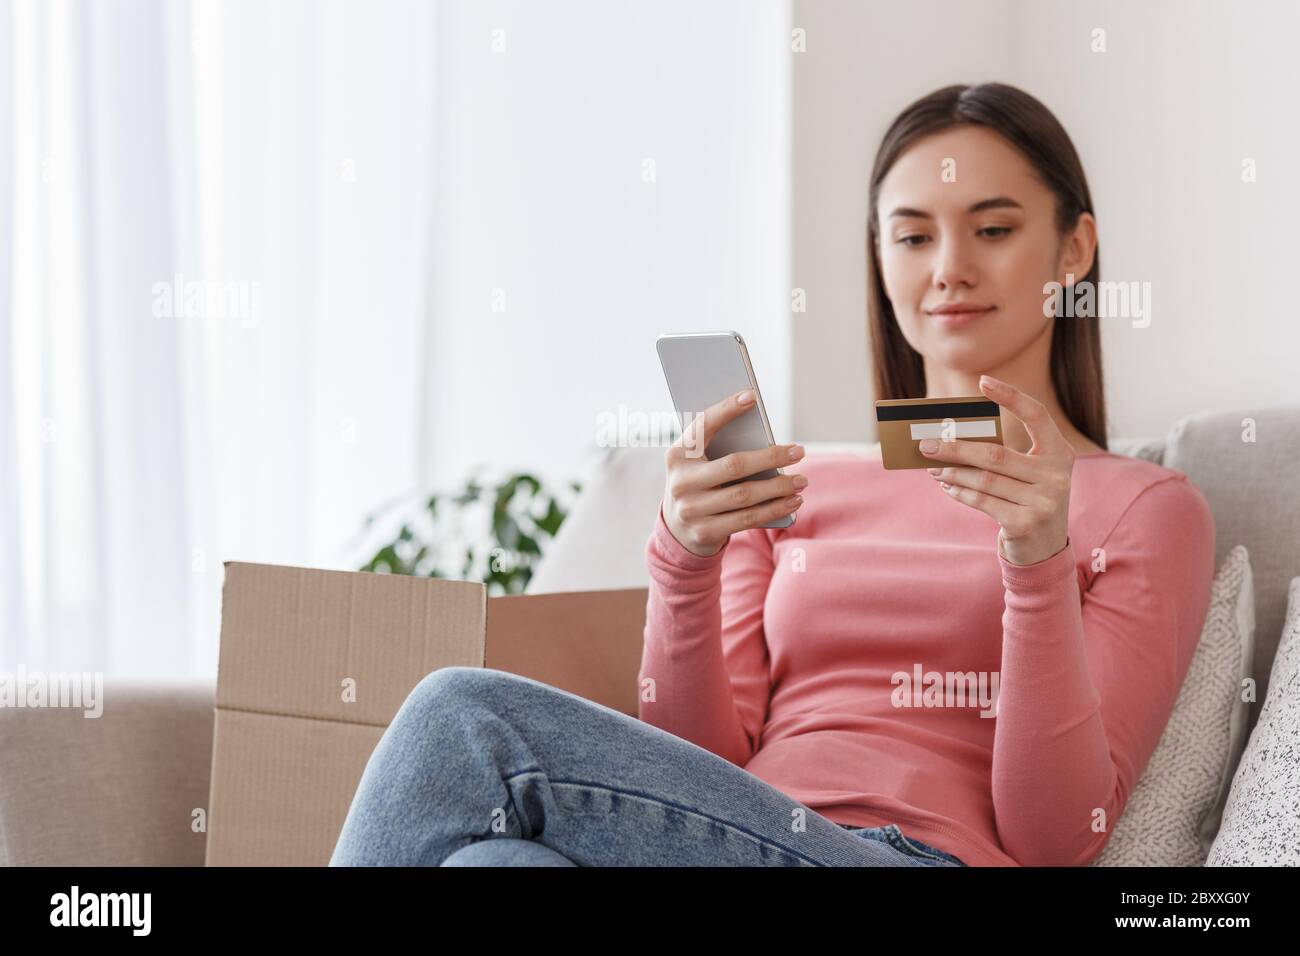 Schnelle Bestellung im Online-Shop. Mädchen mit Smartphone und Kreditkarte sitzt auf Sofa mit Pappkartons Stockfoto